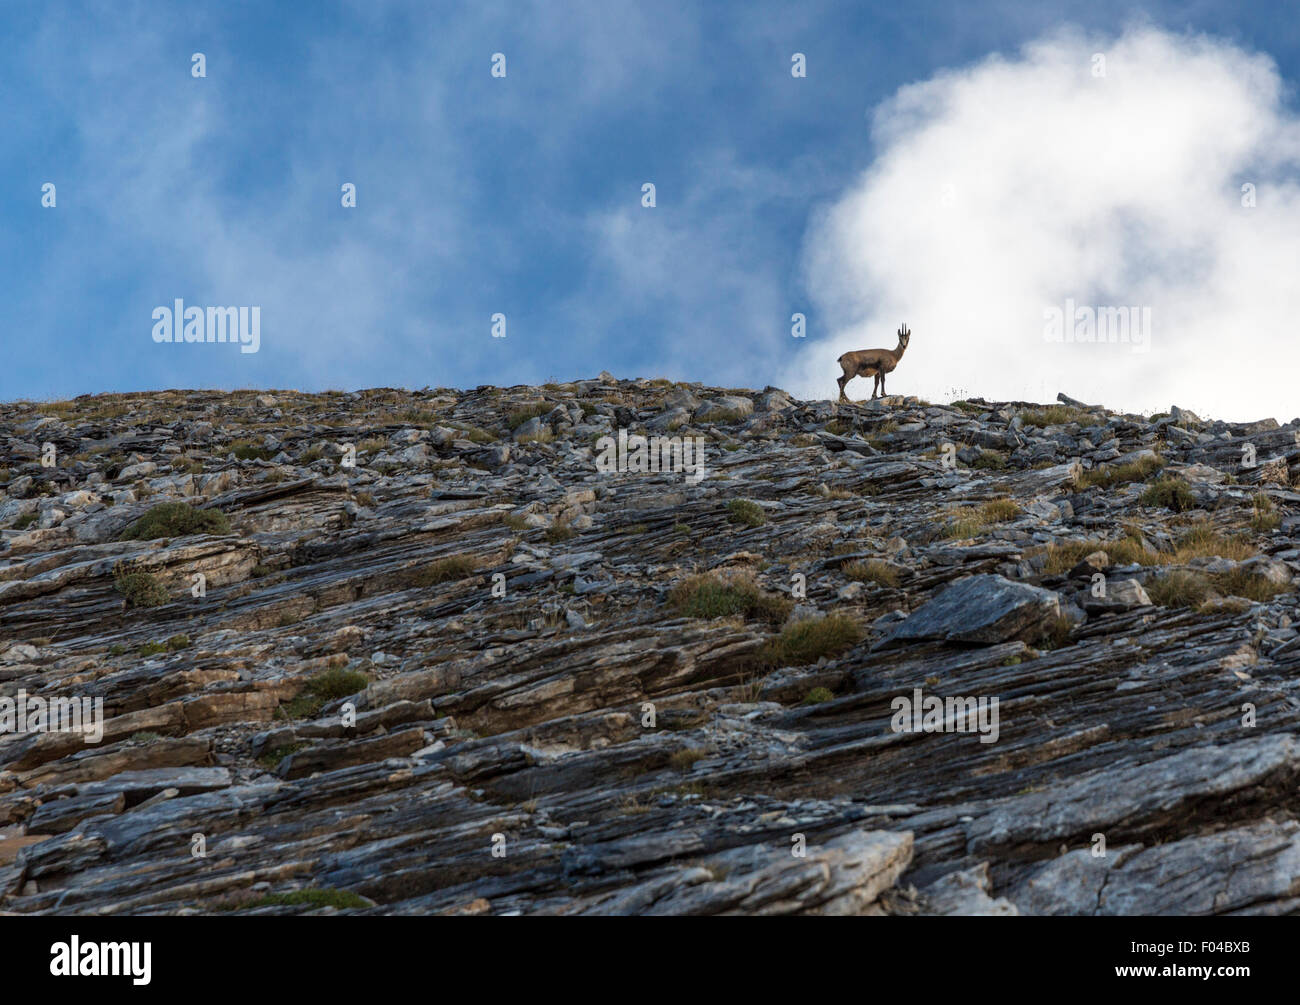 Ibex encuestas la escena desde su percha en una cresta sobre el sendero al monte Olimpo en Grecia Foto de stock